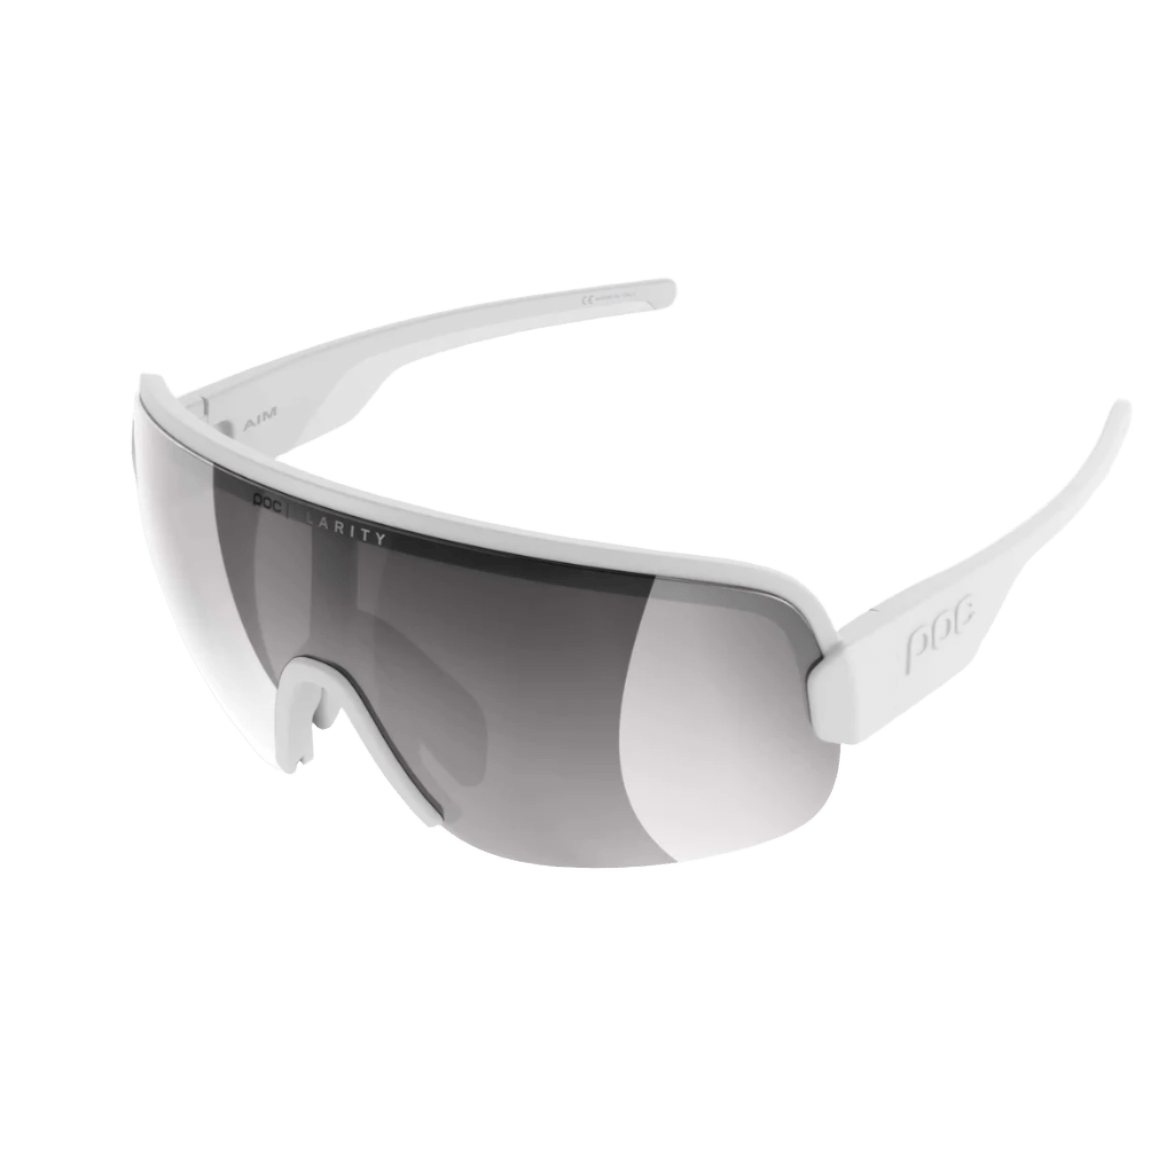 POC Aim Sunglasses Hydrogen White Clarity Road/Sunny Silver Apparel - Apparel Accessories - Sunglasses